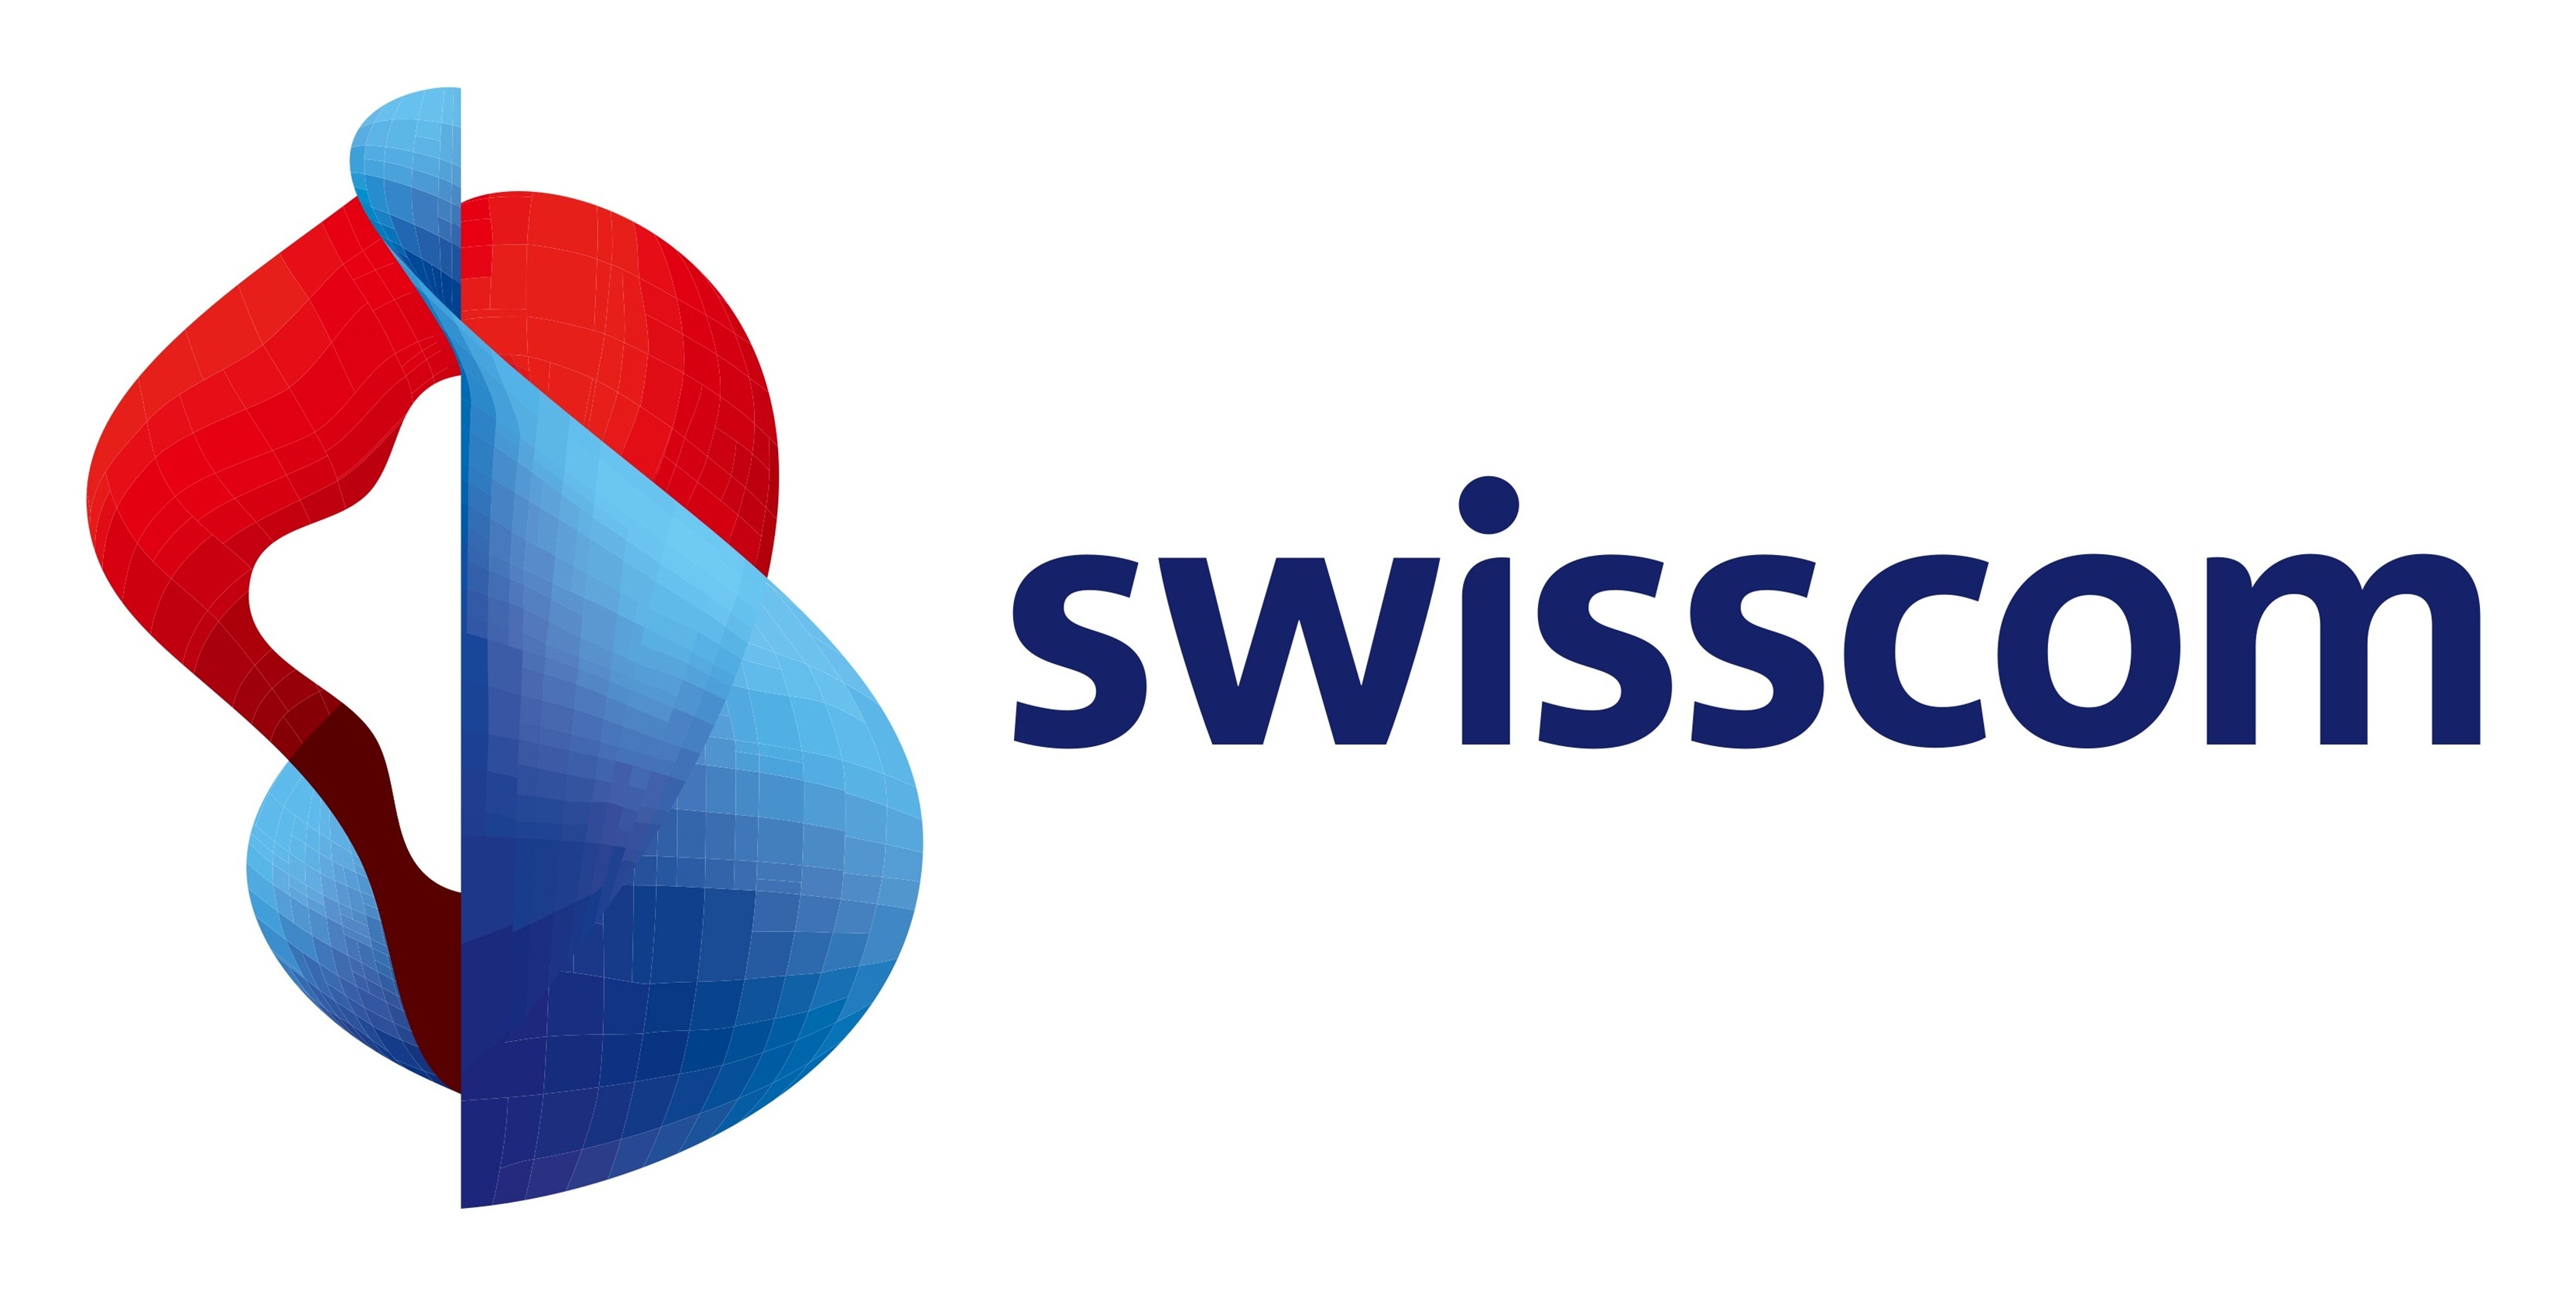 Swisscomm